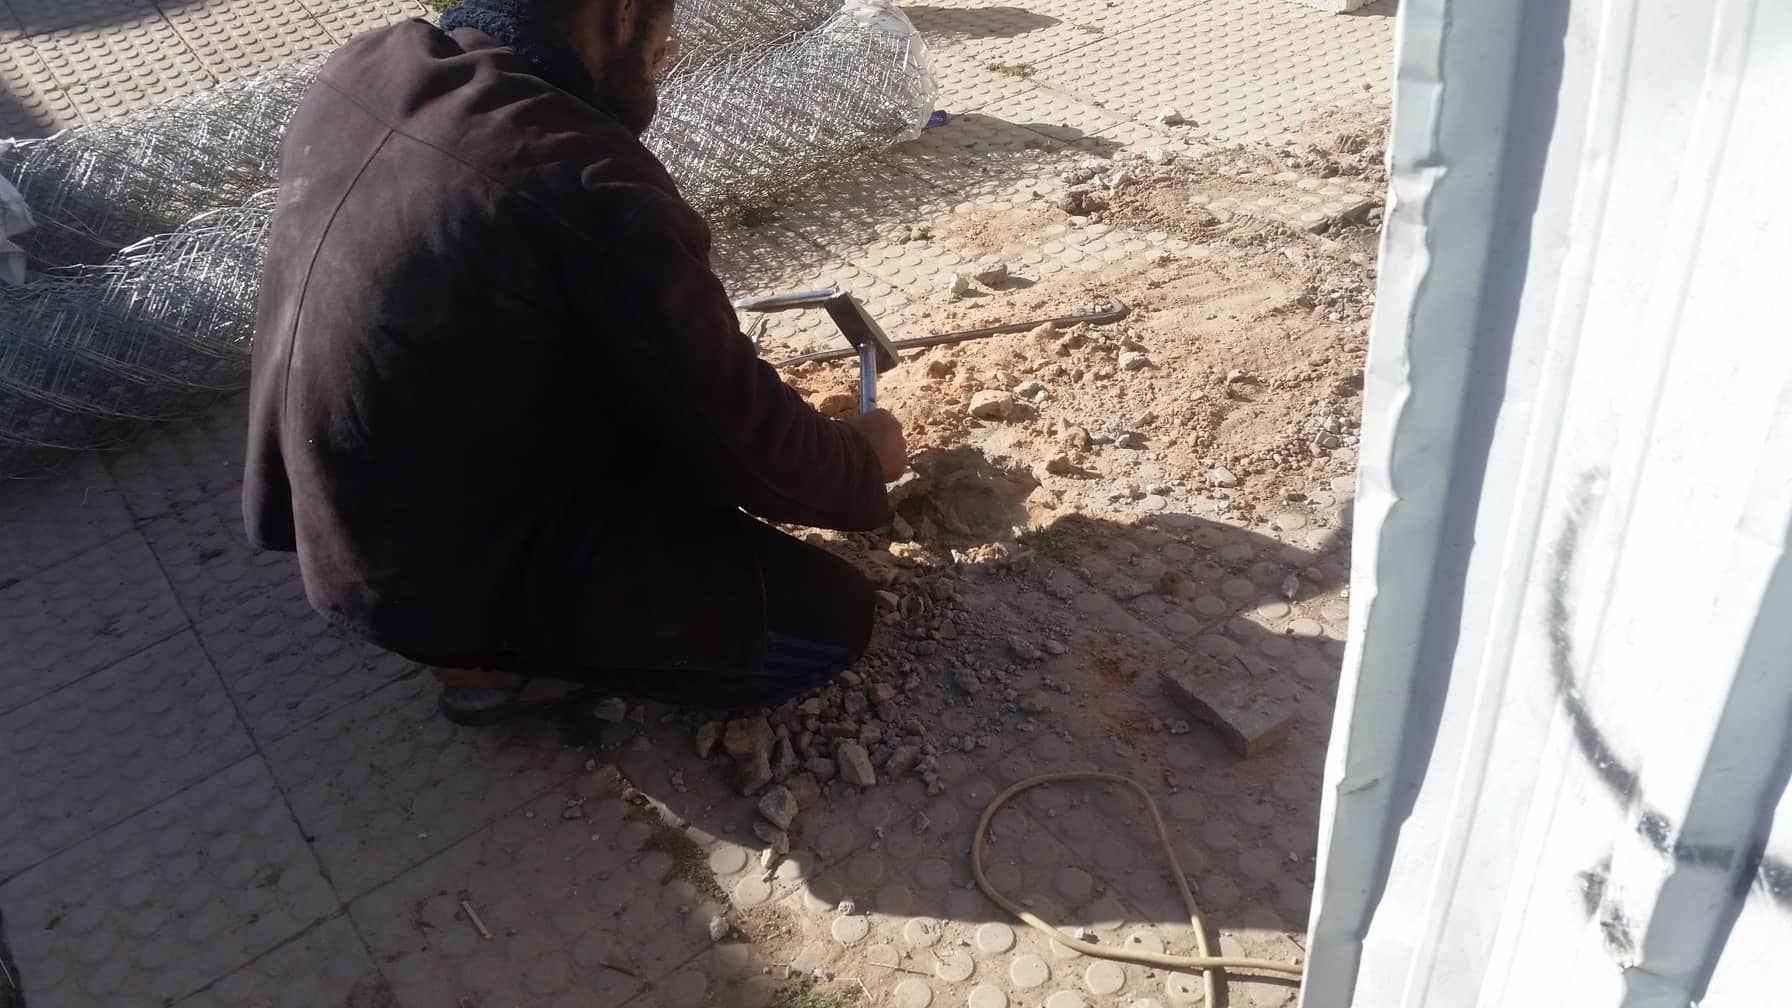 stray shelter OWAP-AR sana'a fence building 18 FEB 2019 yemen rescue equestrian.jpg